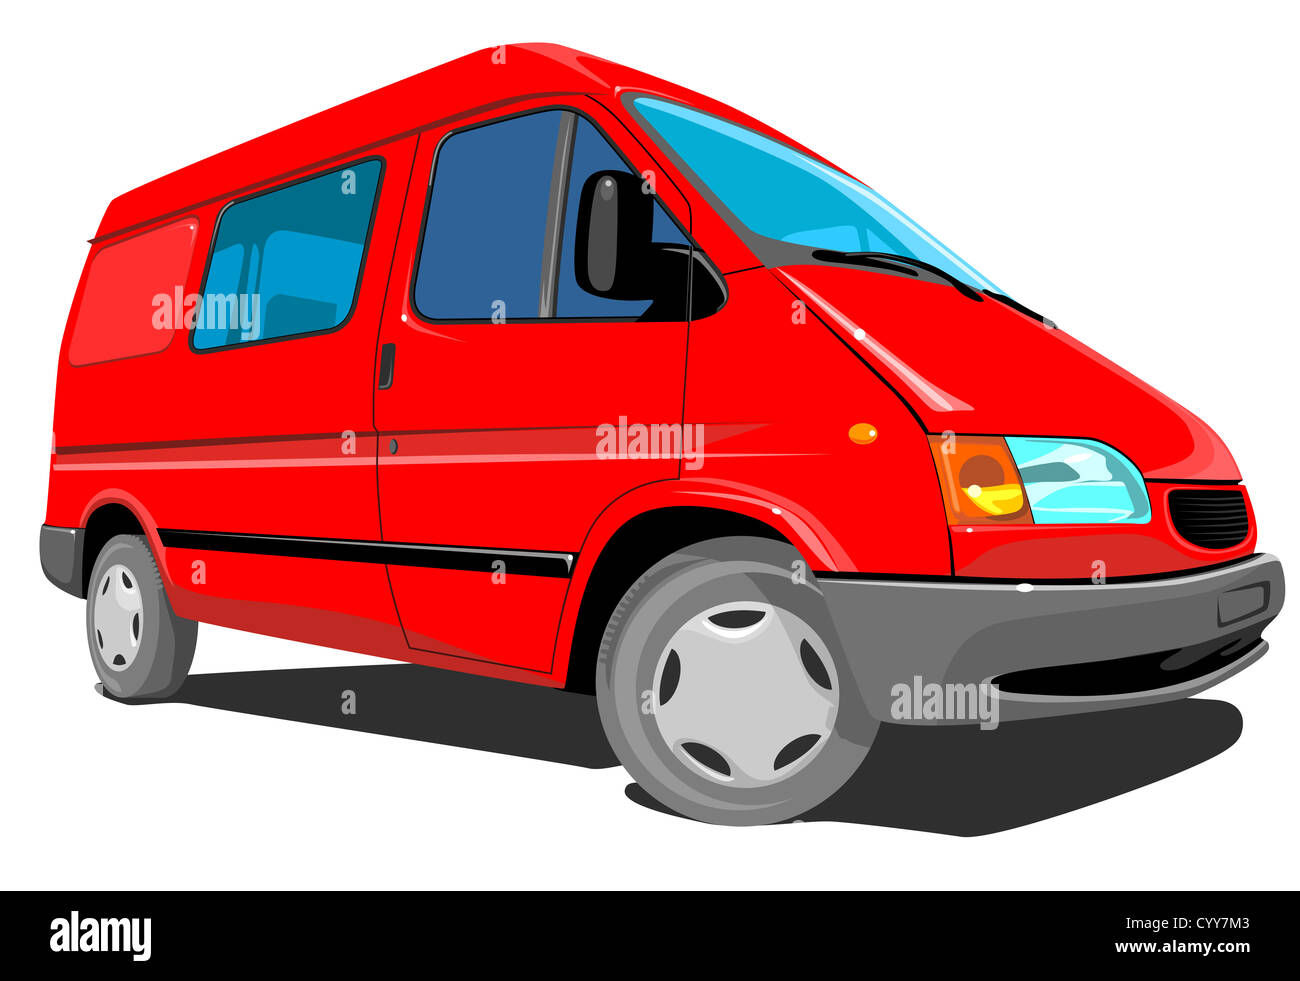 Illustration d'un camion de livraison fait en style rétro. Banque D'Images